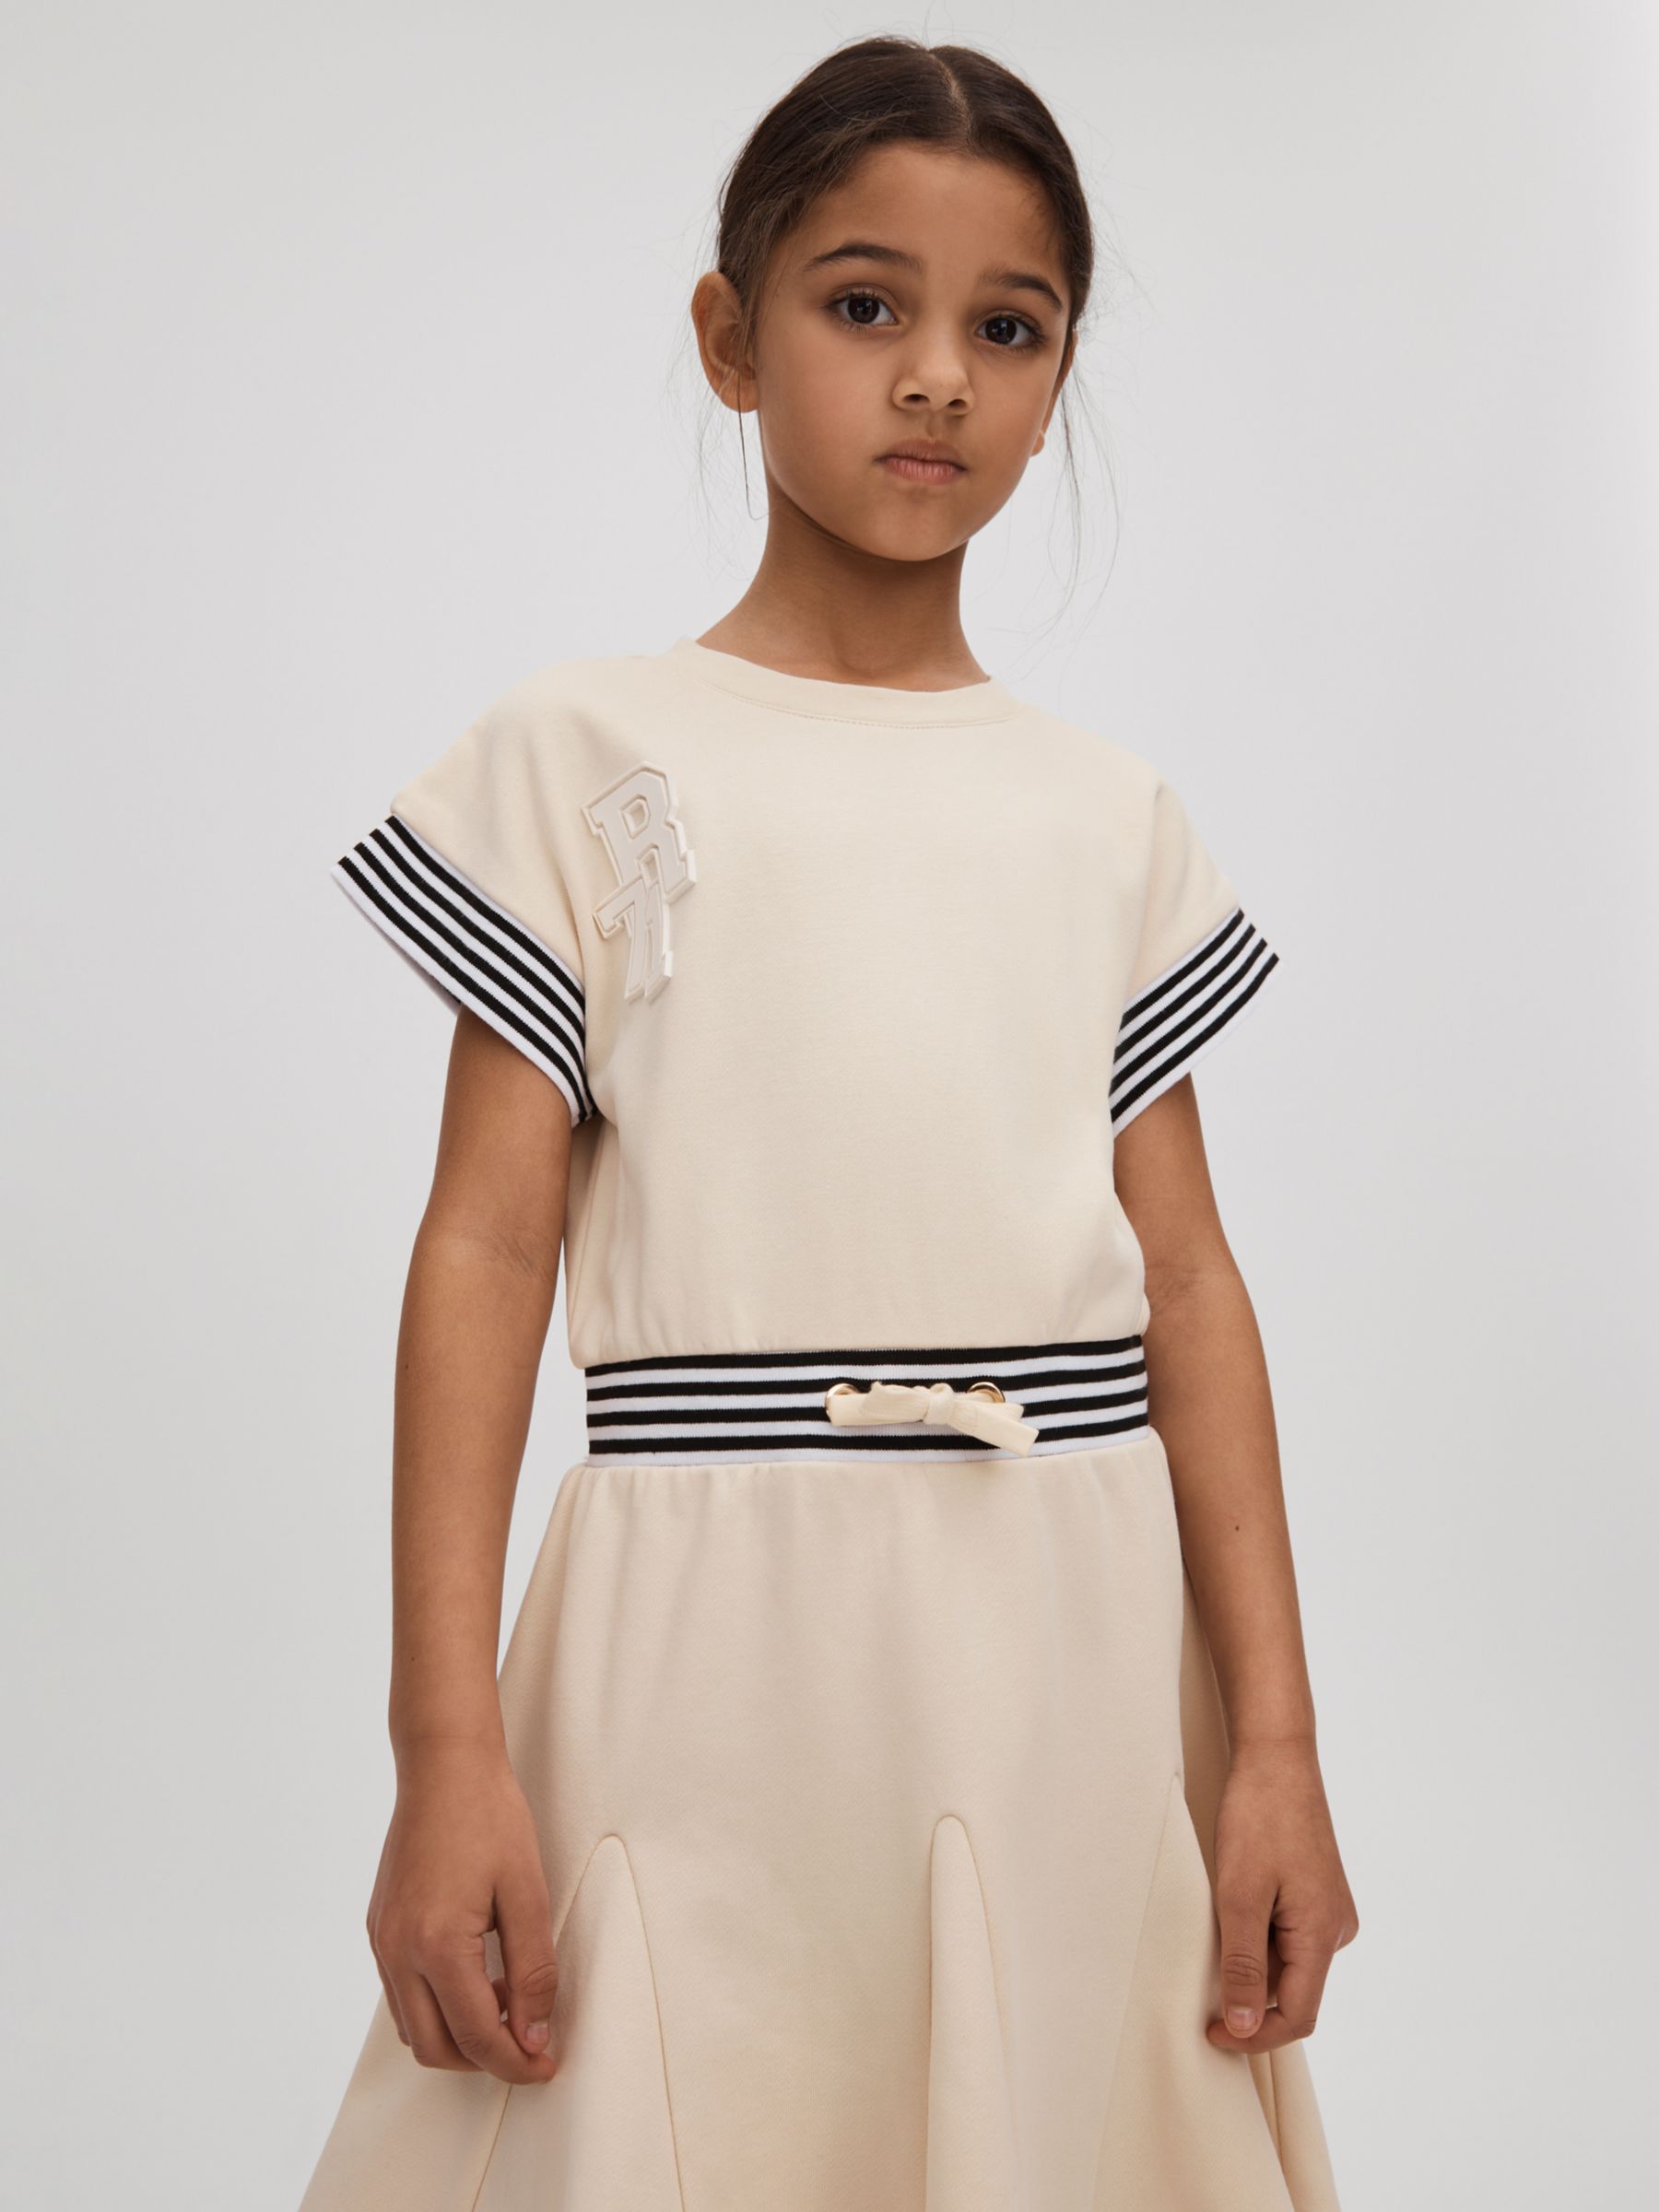 Reiss Kids' Milo Logo Stripe Trim Jersey Dress, Ivory, 4-5 years